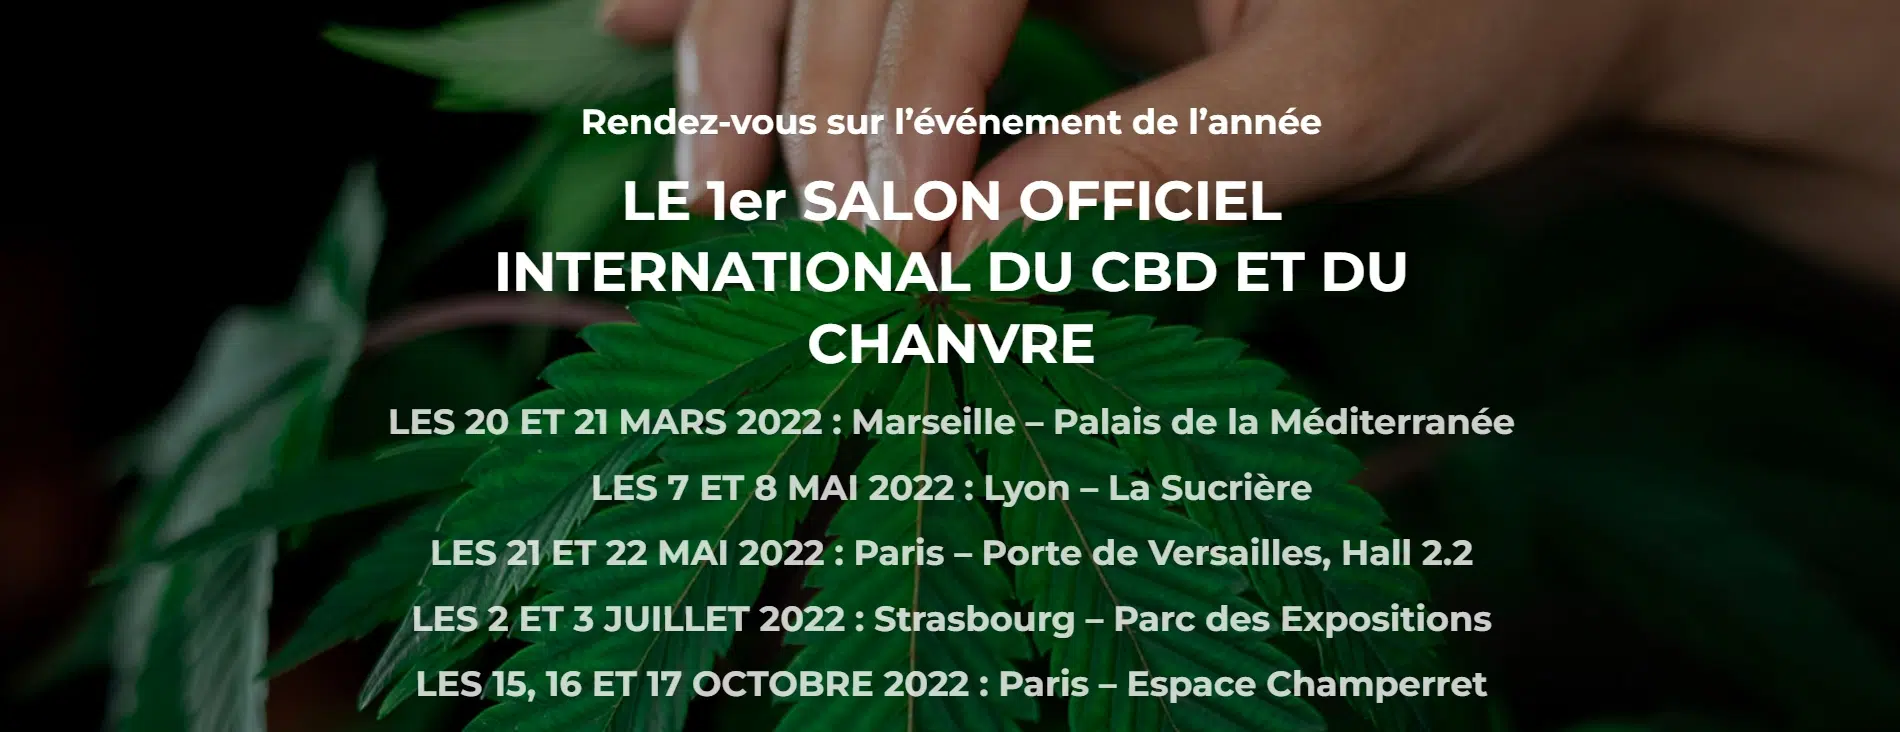 Cannabis thérapeutique. Ce week-end, Marseille accueille le premier salon du CBD de France